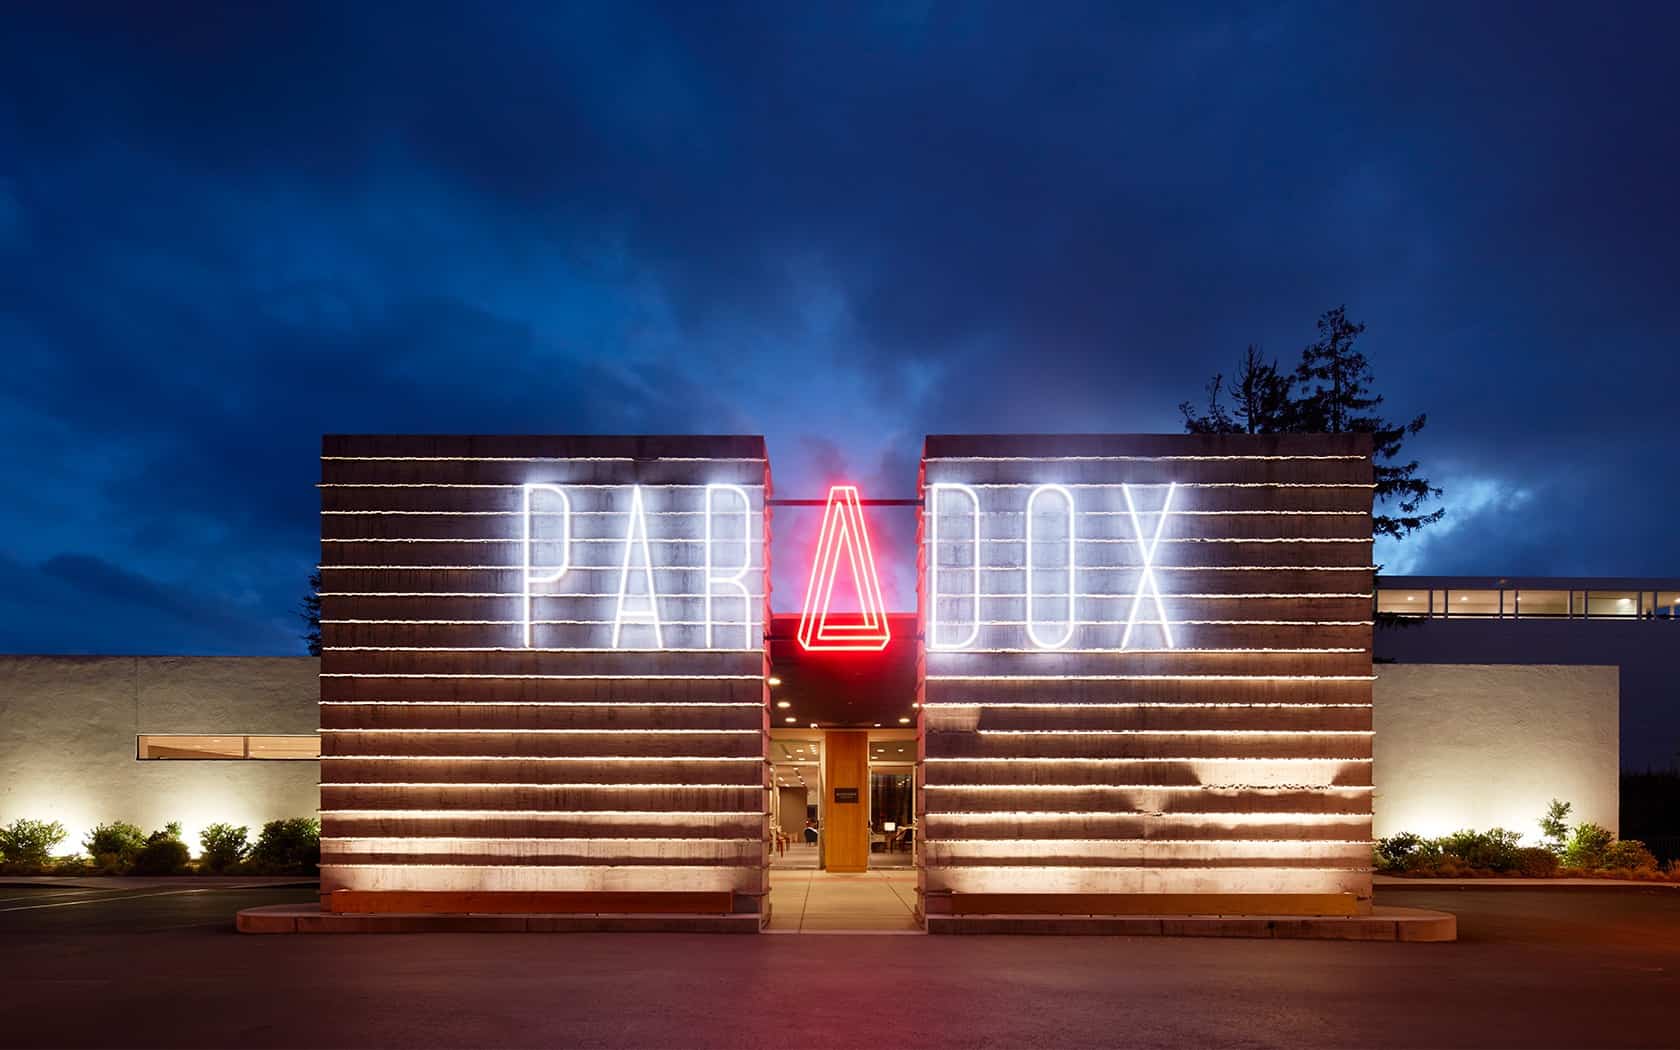 Hotel Paradox, coleção de autógrafos